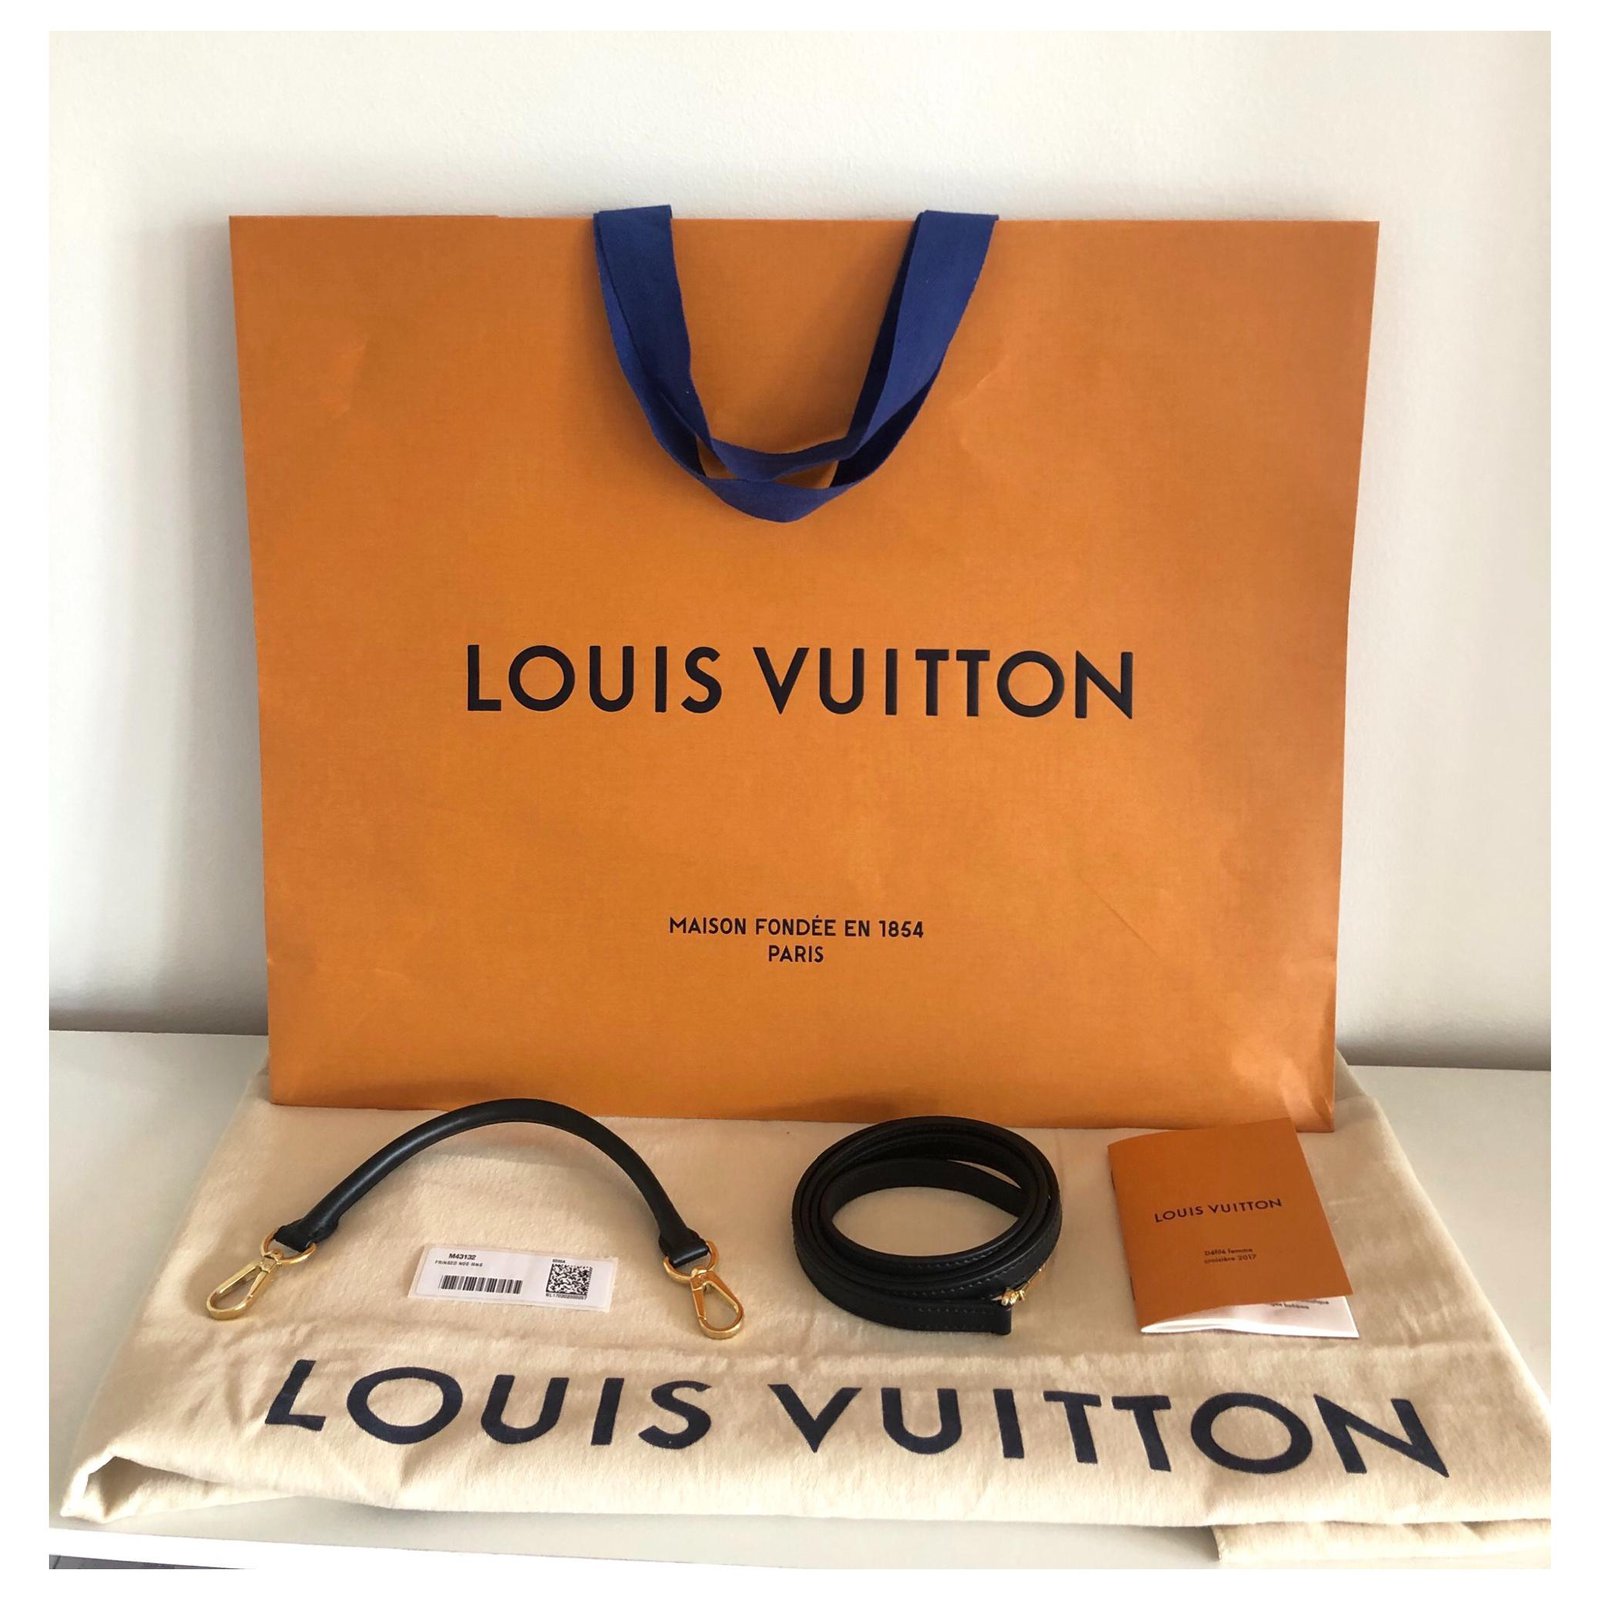 Louis Vuitton Fringed Noe Bag - Monogram Crossbody Bag - 2017 - Never worn